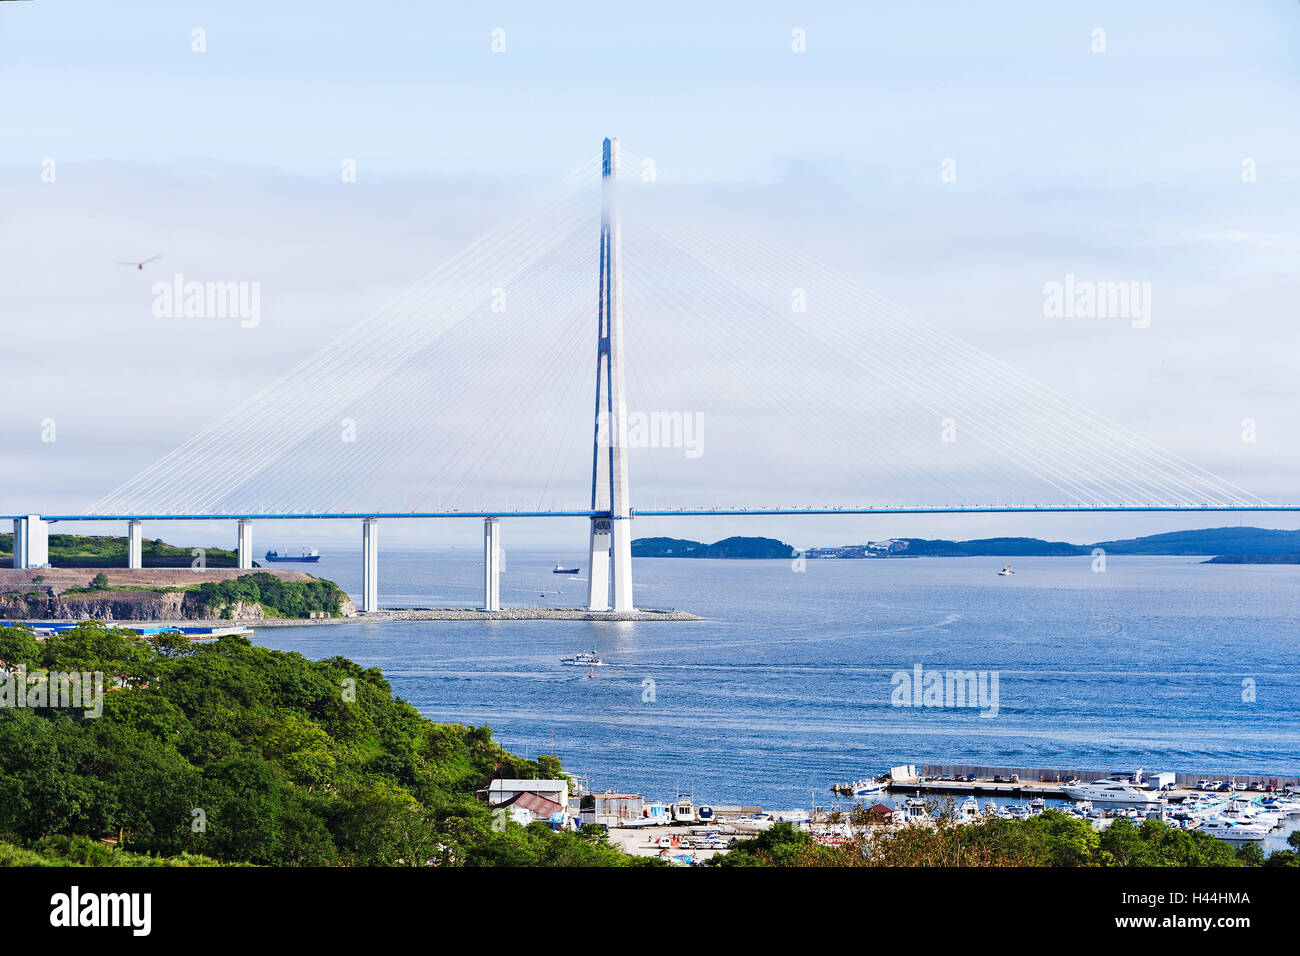 Plus long pont à haubans au monde à l'Île russe. Vladivostok. La Russie. Banque D'Images